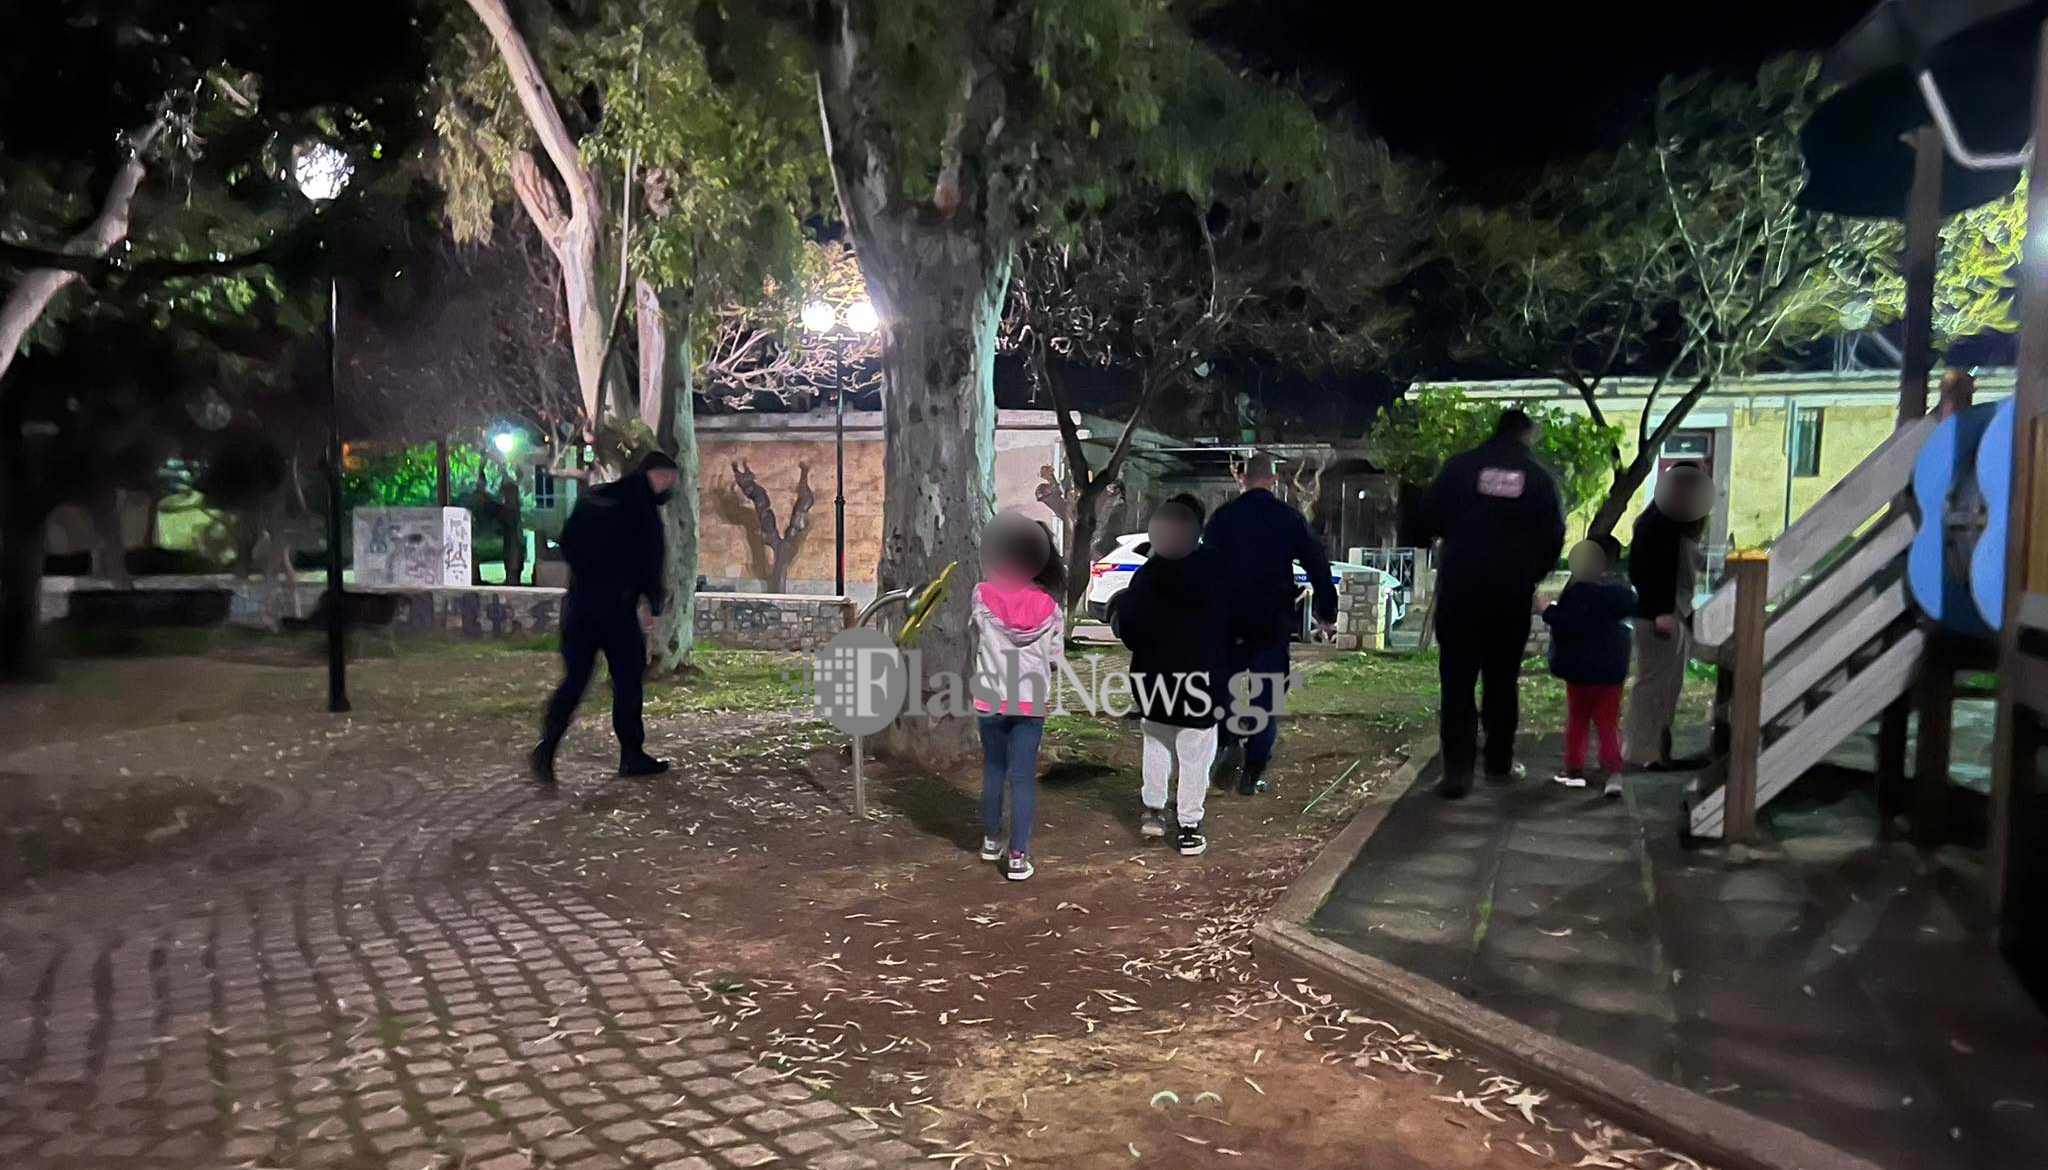 Βρέθηκαν χωρίς επιτήρηση δυο παιδιά σε πάρκο των Χανίων (φωτο)